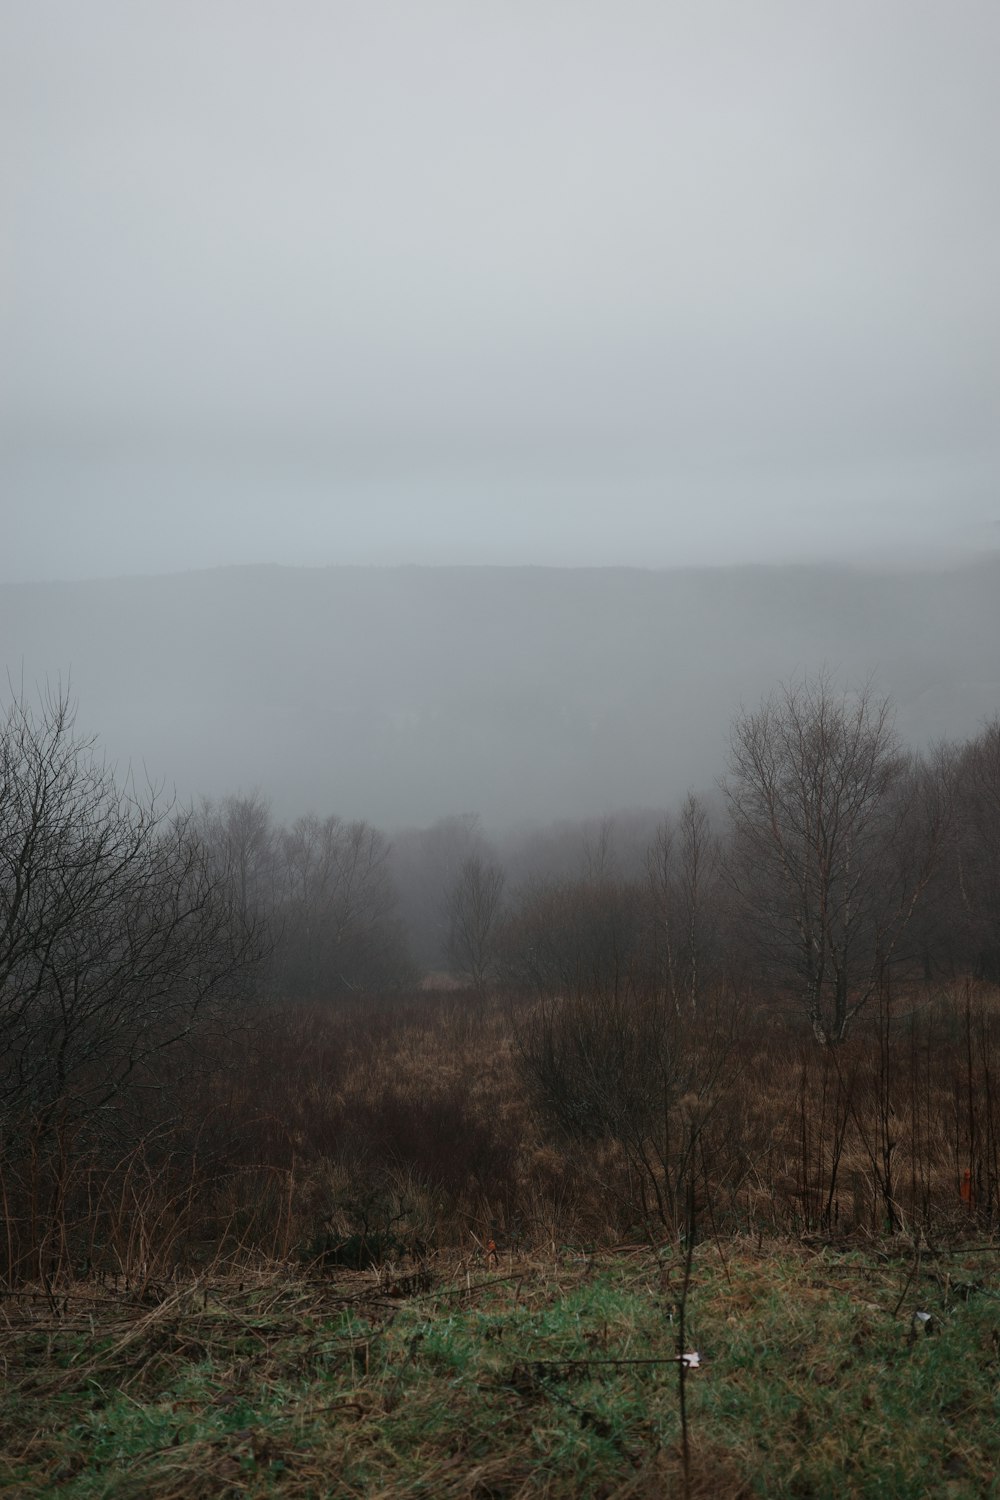 前景に木々や茂みがある霧の野原